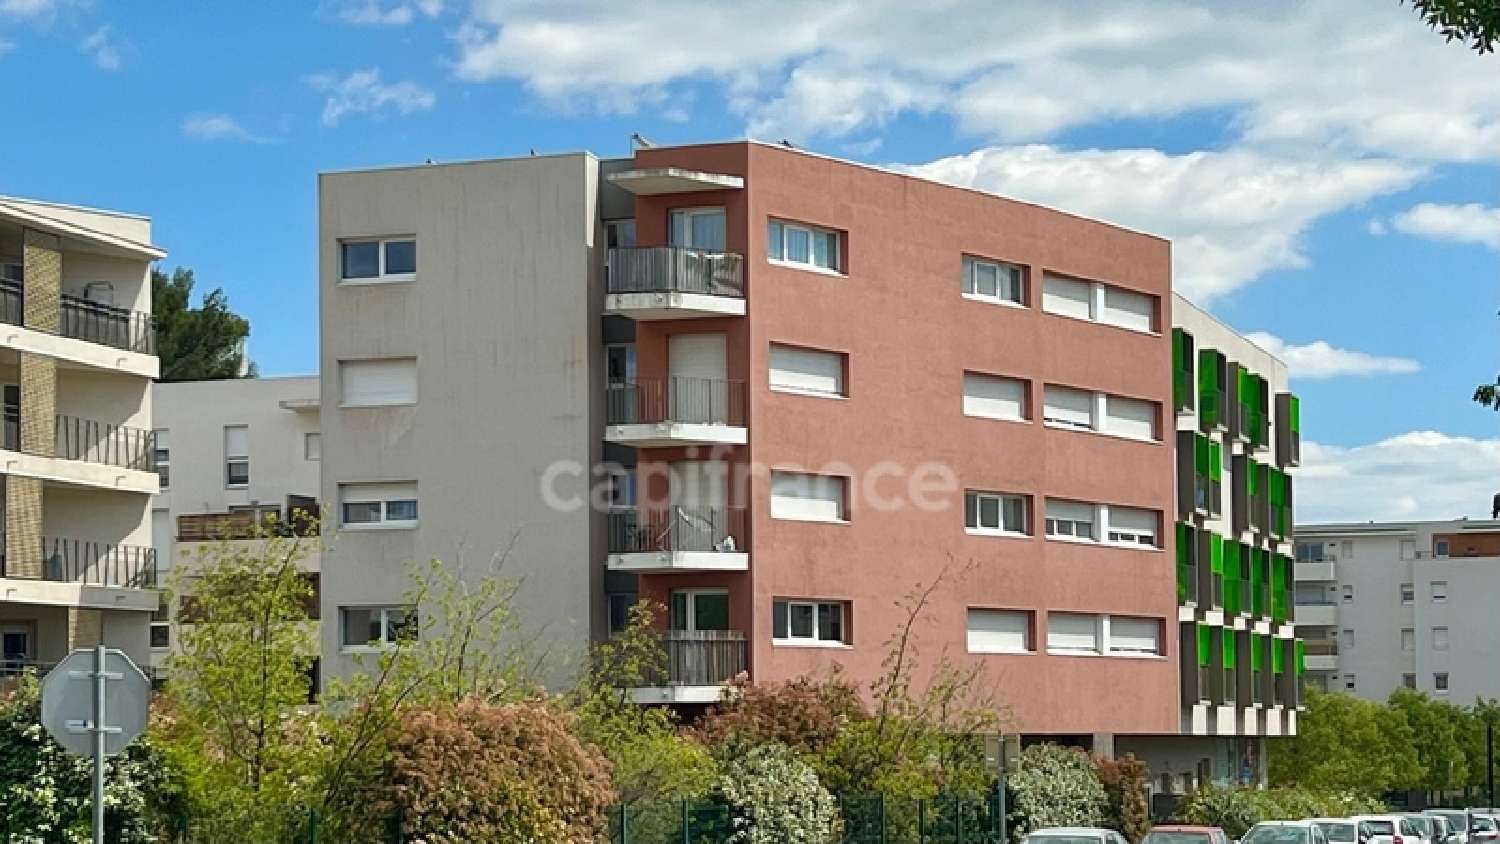 Montpellier 34090 Hérault Wohnung/ Apartment Bild 6866390